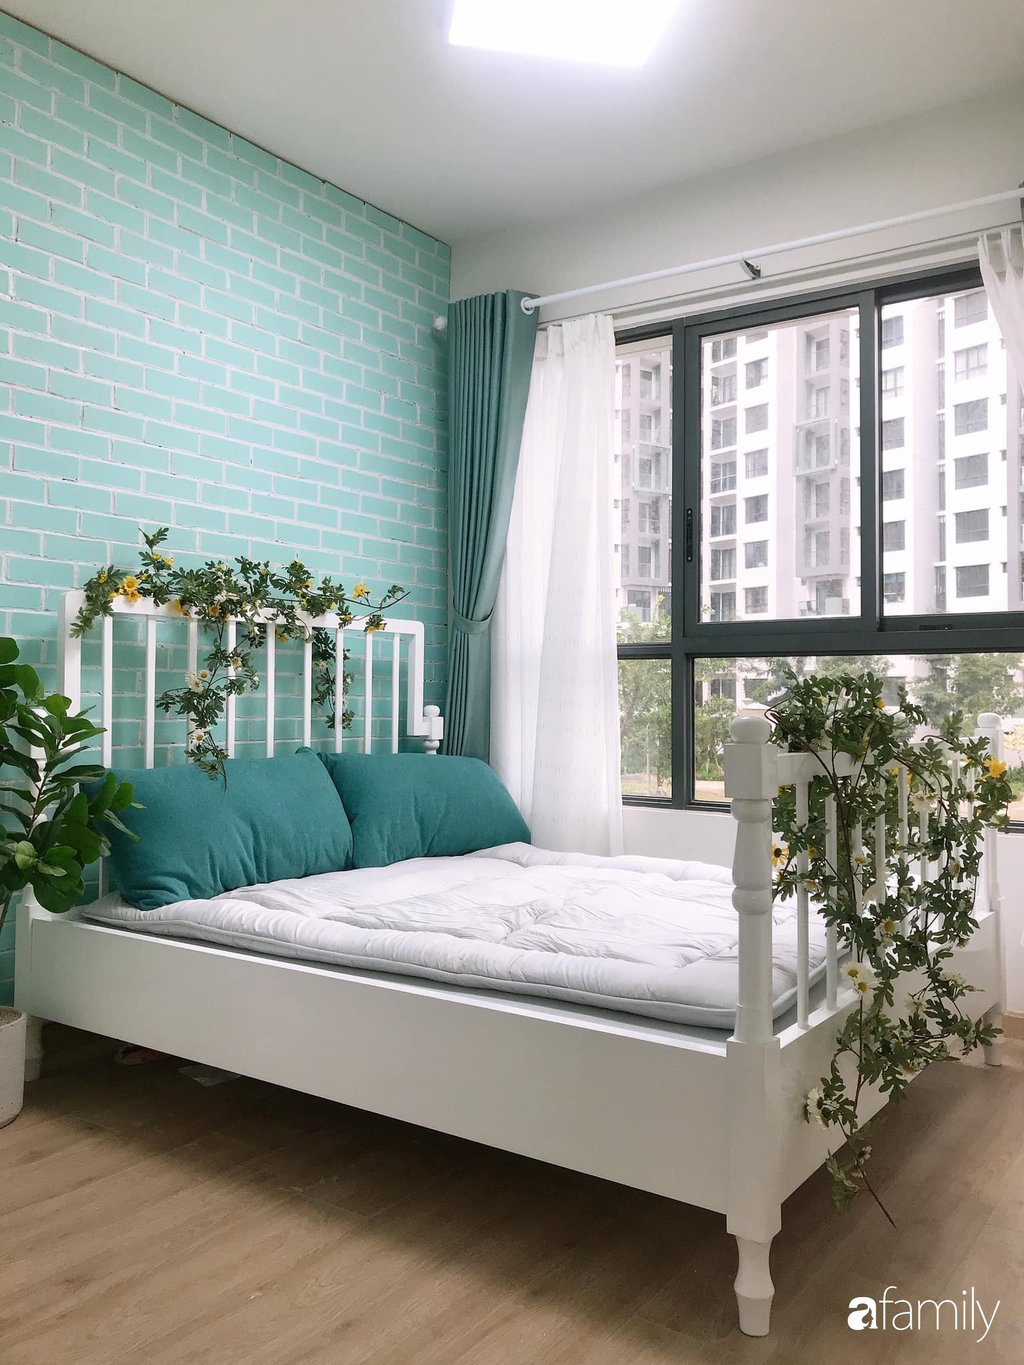 Điểm tô trên chiếc giường trắng là những cành hoa cúc rủ tạo vẻ đẹp ngọt ngào và lãng mạn cho không gian nghỉ ngơi. Cách lựa chọn màu sắc đơn giản, nội thất gọn gàng giúp không gian thêm rộng và thoáng hơn nhiều so với diện tích thực.